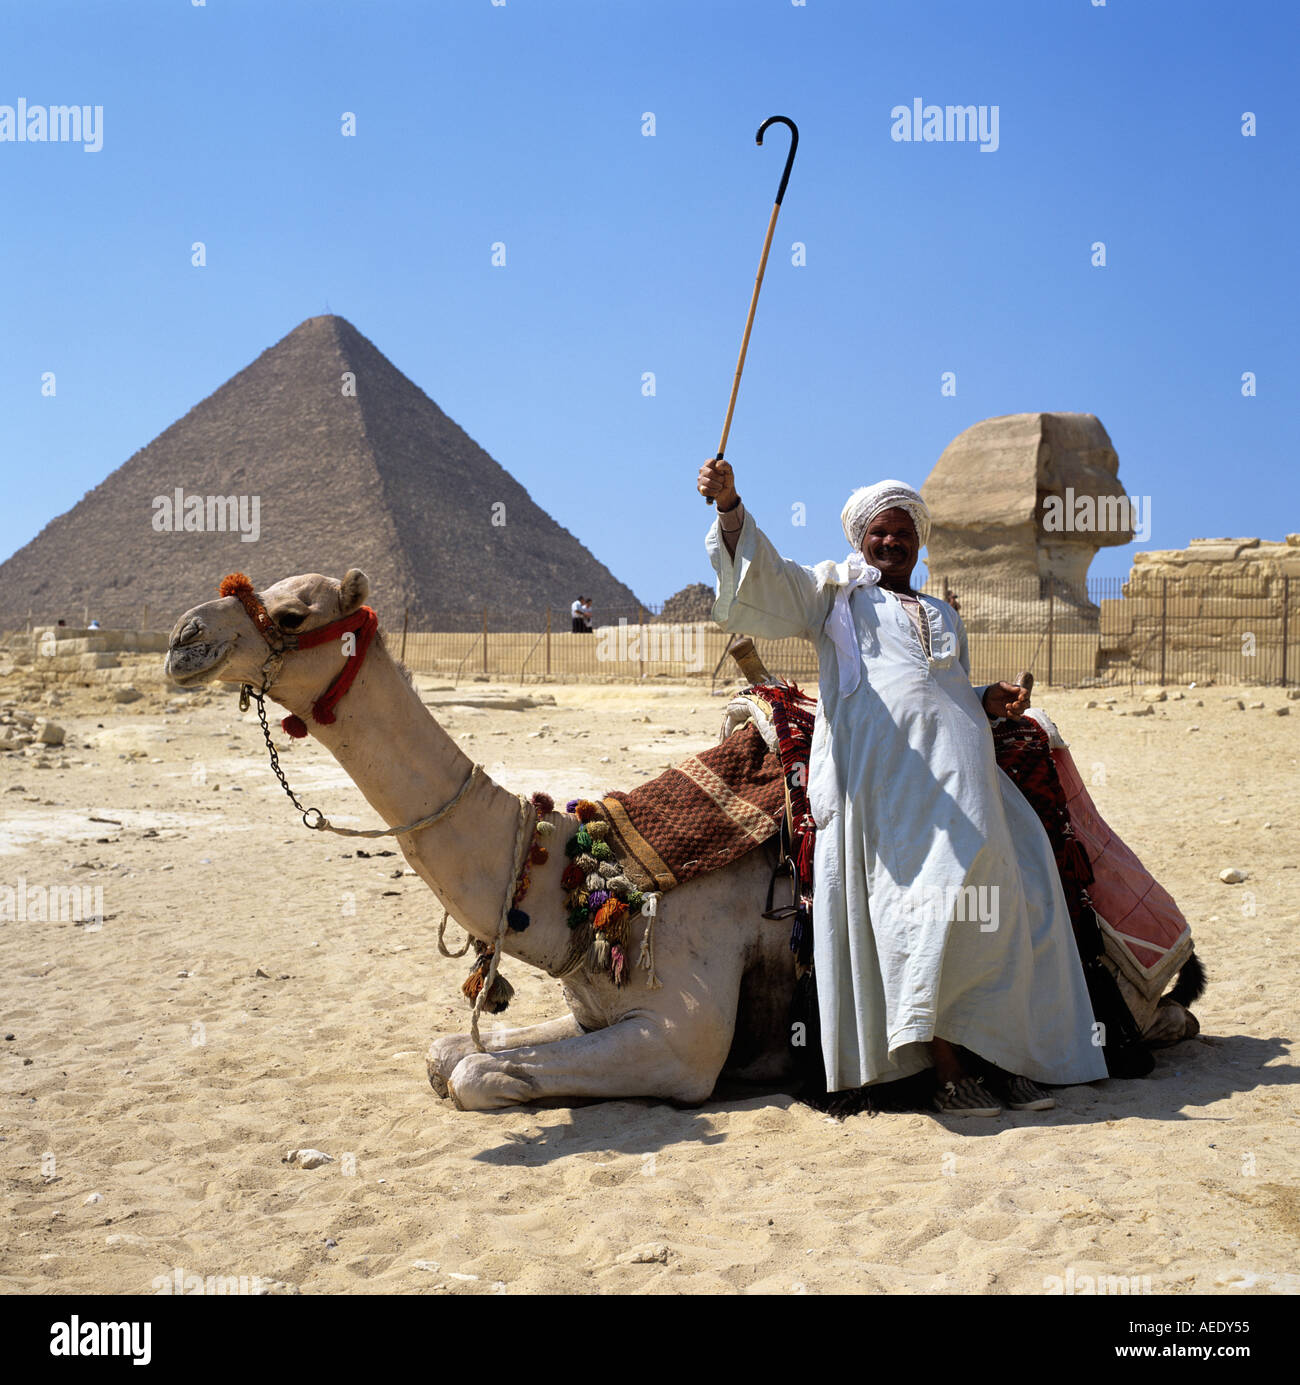 Bédouins et Camel en dehors de la grande pyramide de Gizeh Egypte Afrique du Nord Banque D'Images